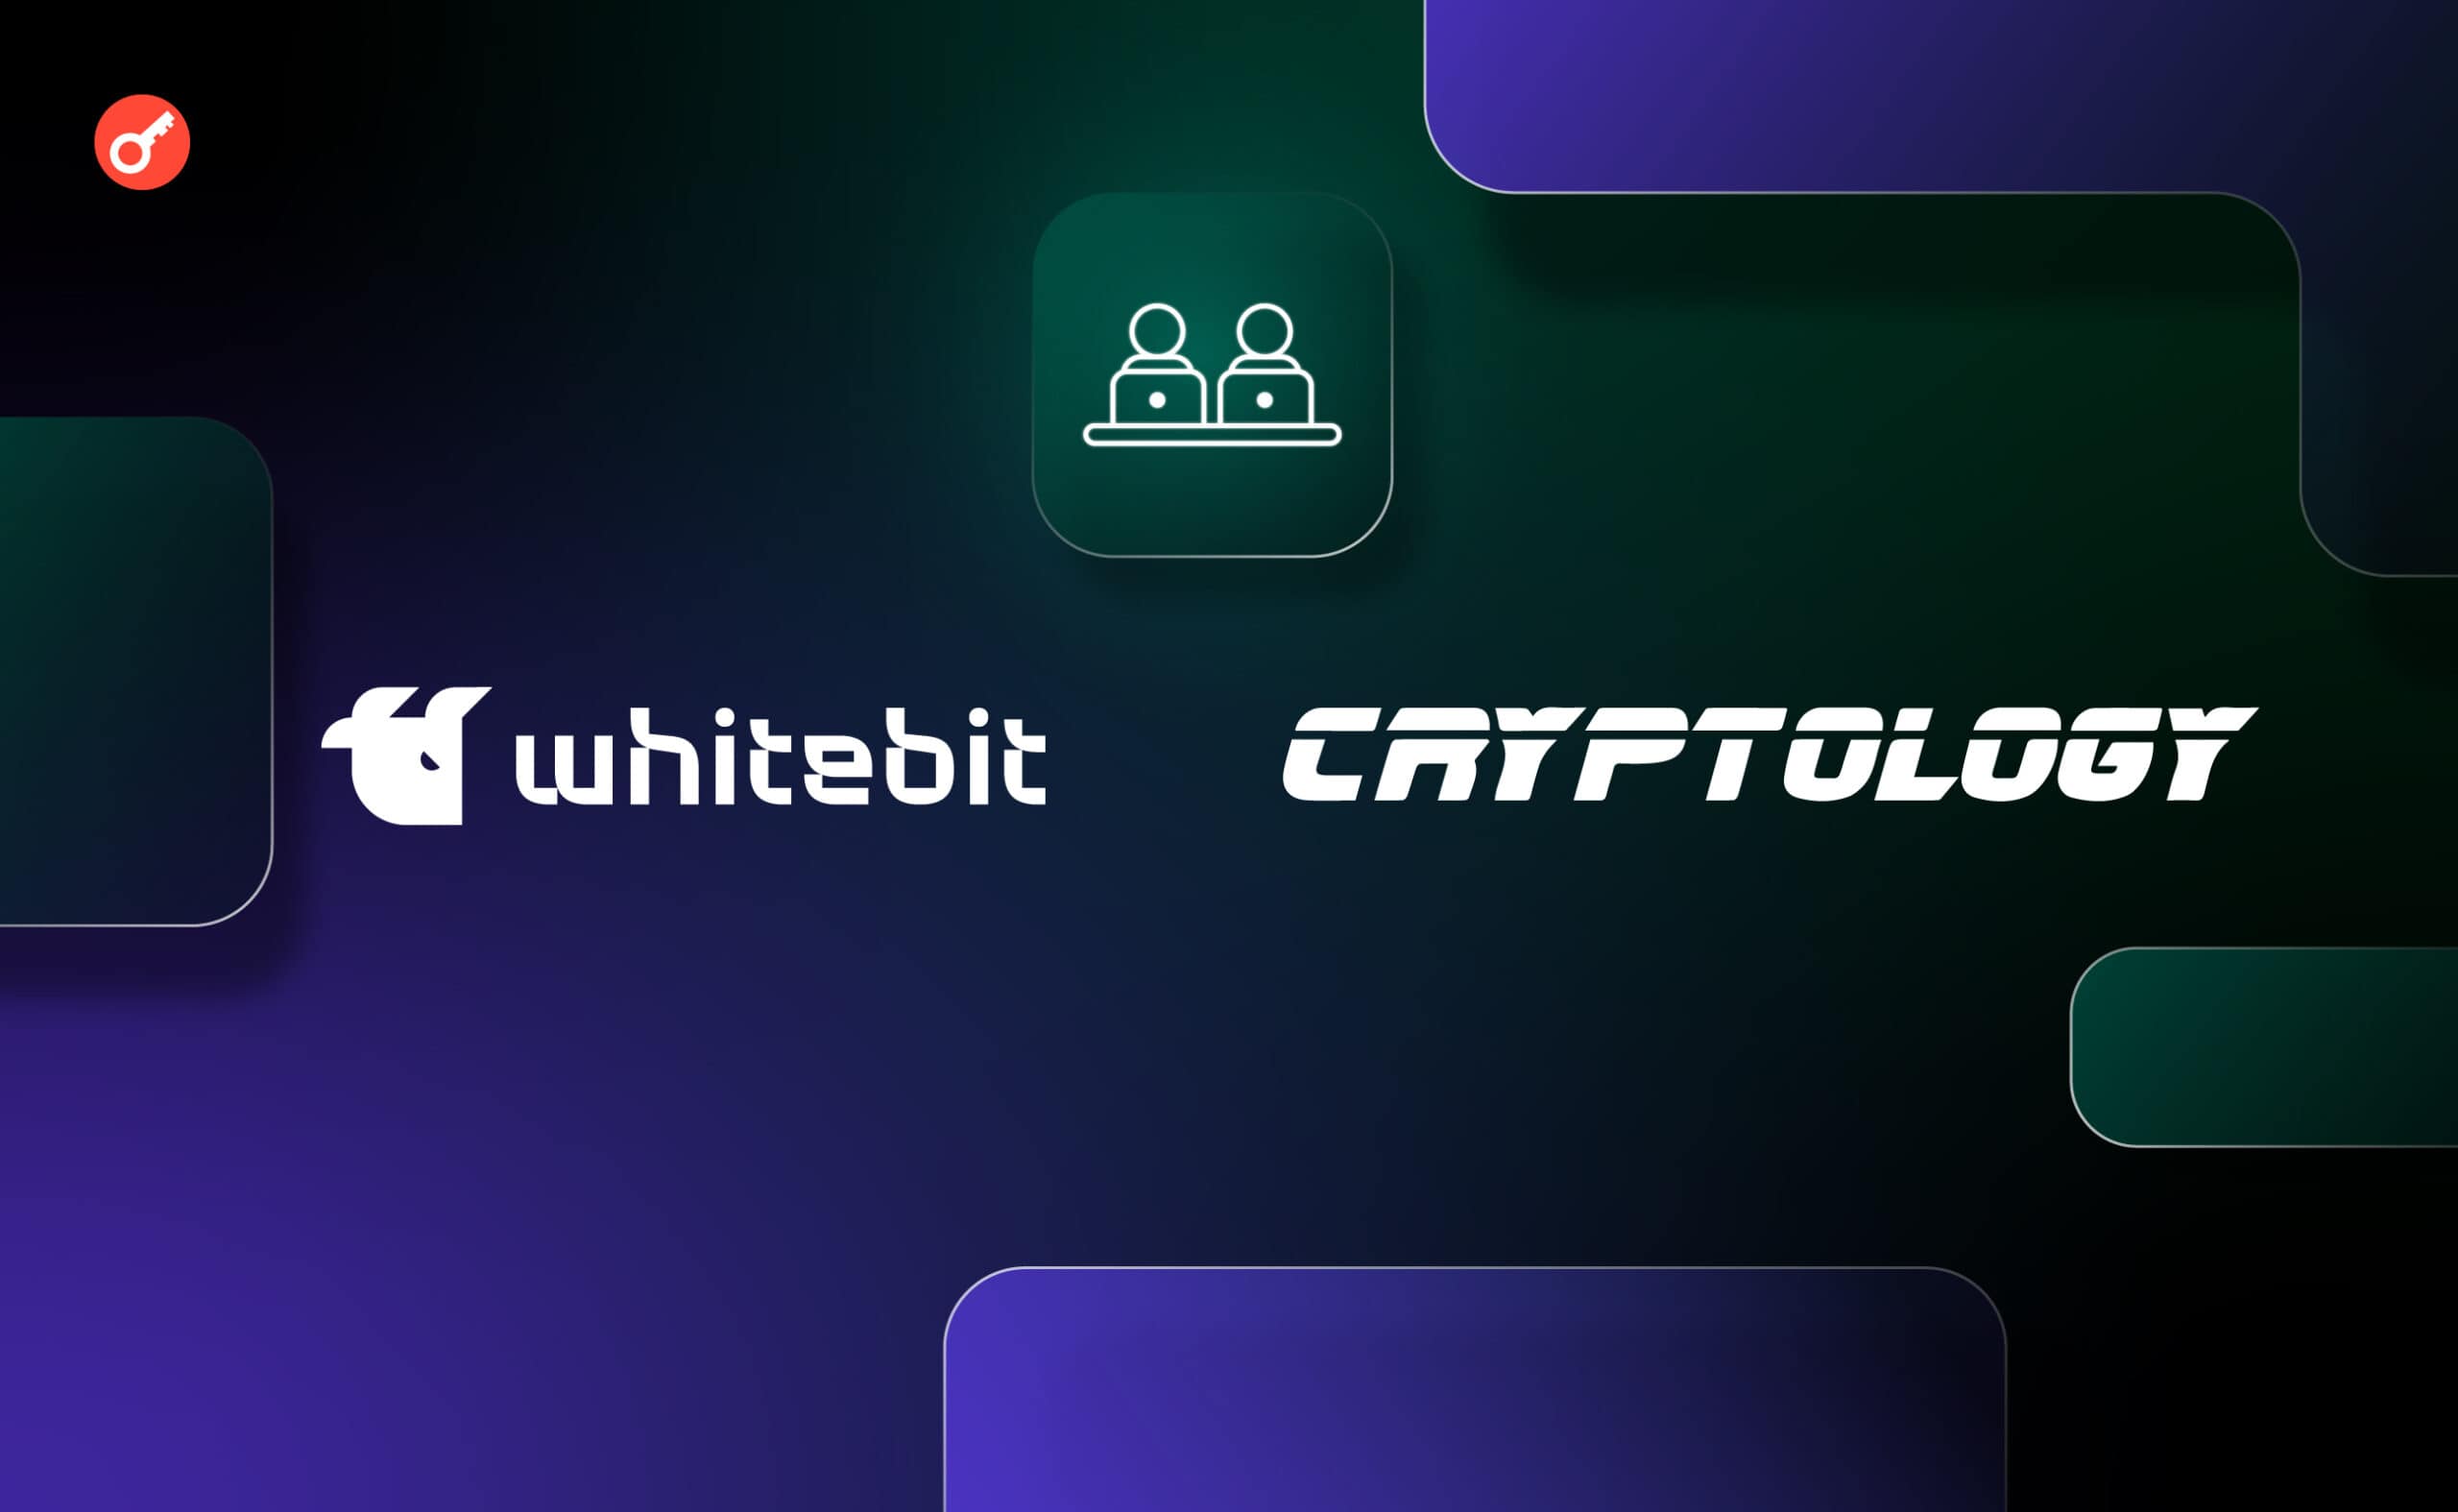 WhiteBIT і Cryptology запустили безкоштовний курс фінансової грамотності для підлітків. Головний колаж новини.